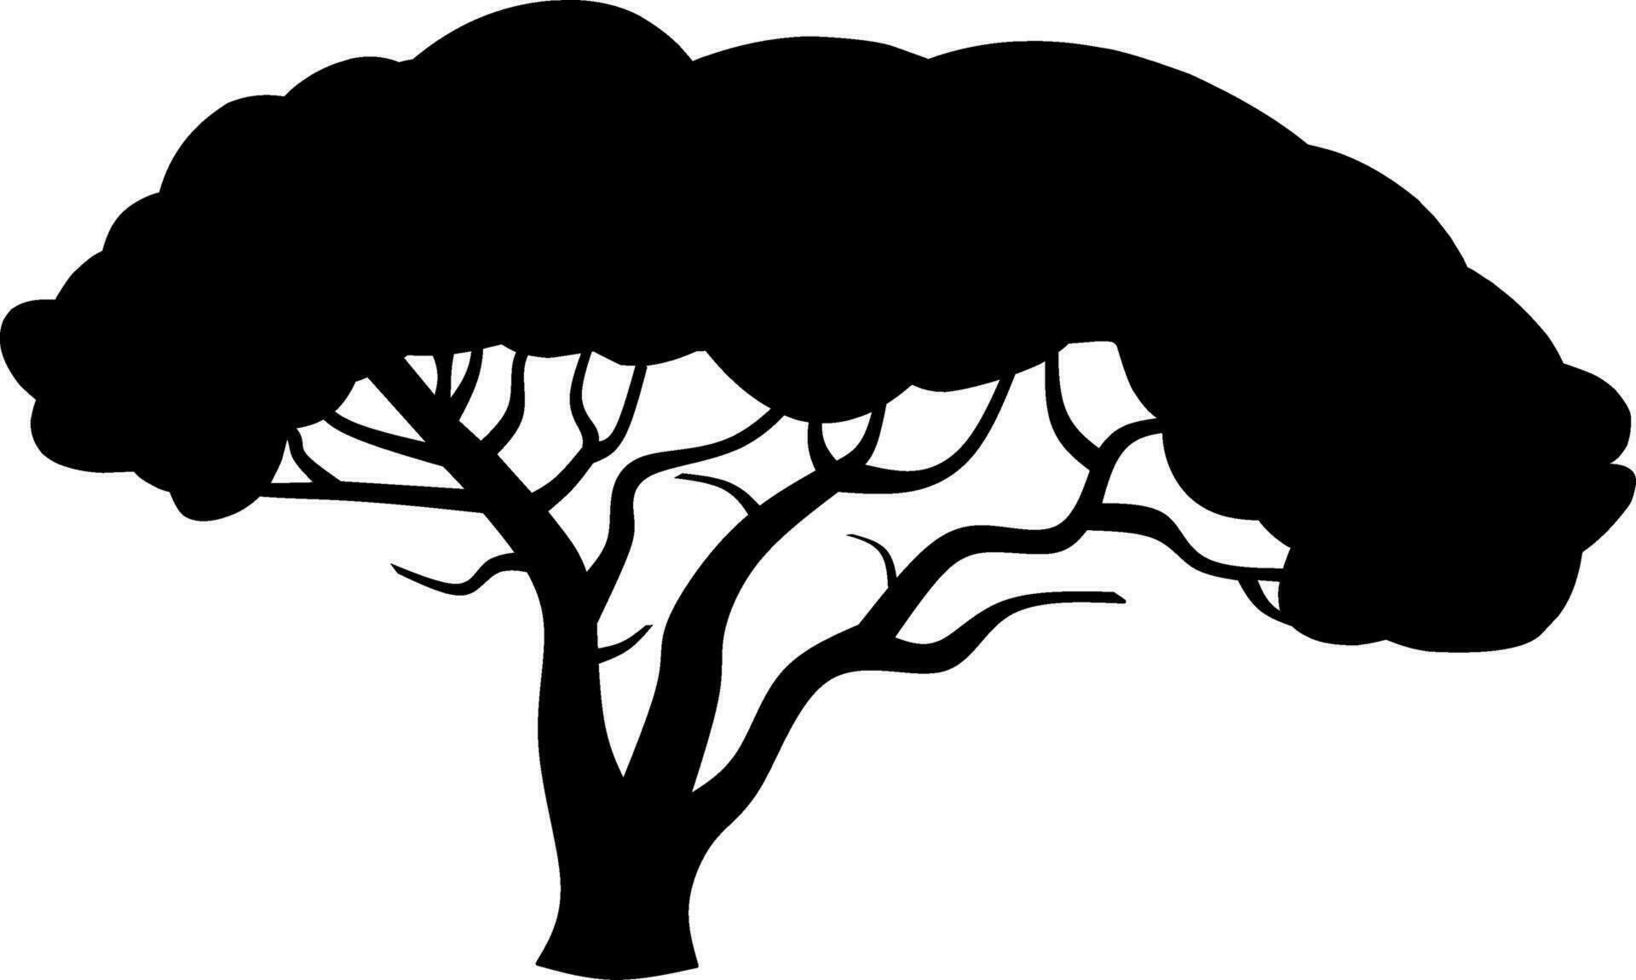 afrikansk träd ikon vektor illustration. afrikansk träd silhuett för ikon, symbol eller tecken. träd symbol för design handla om vilda djur och växter, natur, växt, flora, skog och ekologi